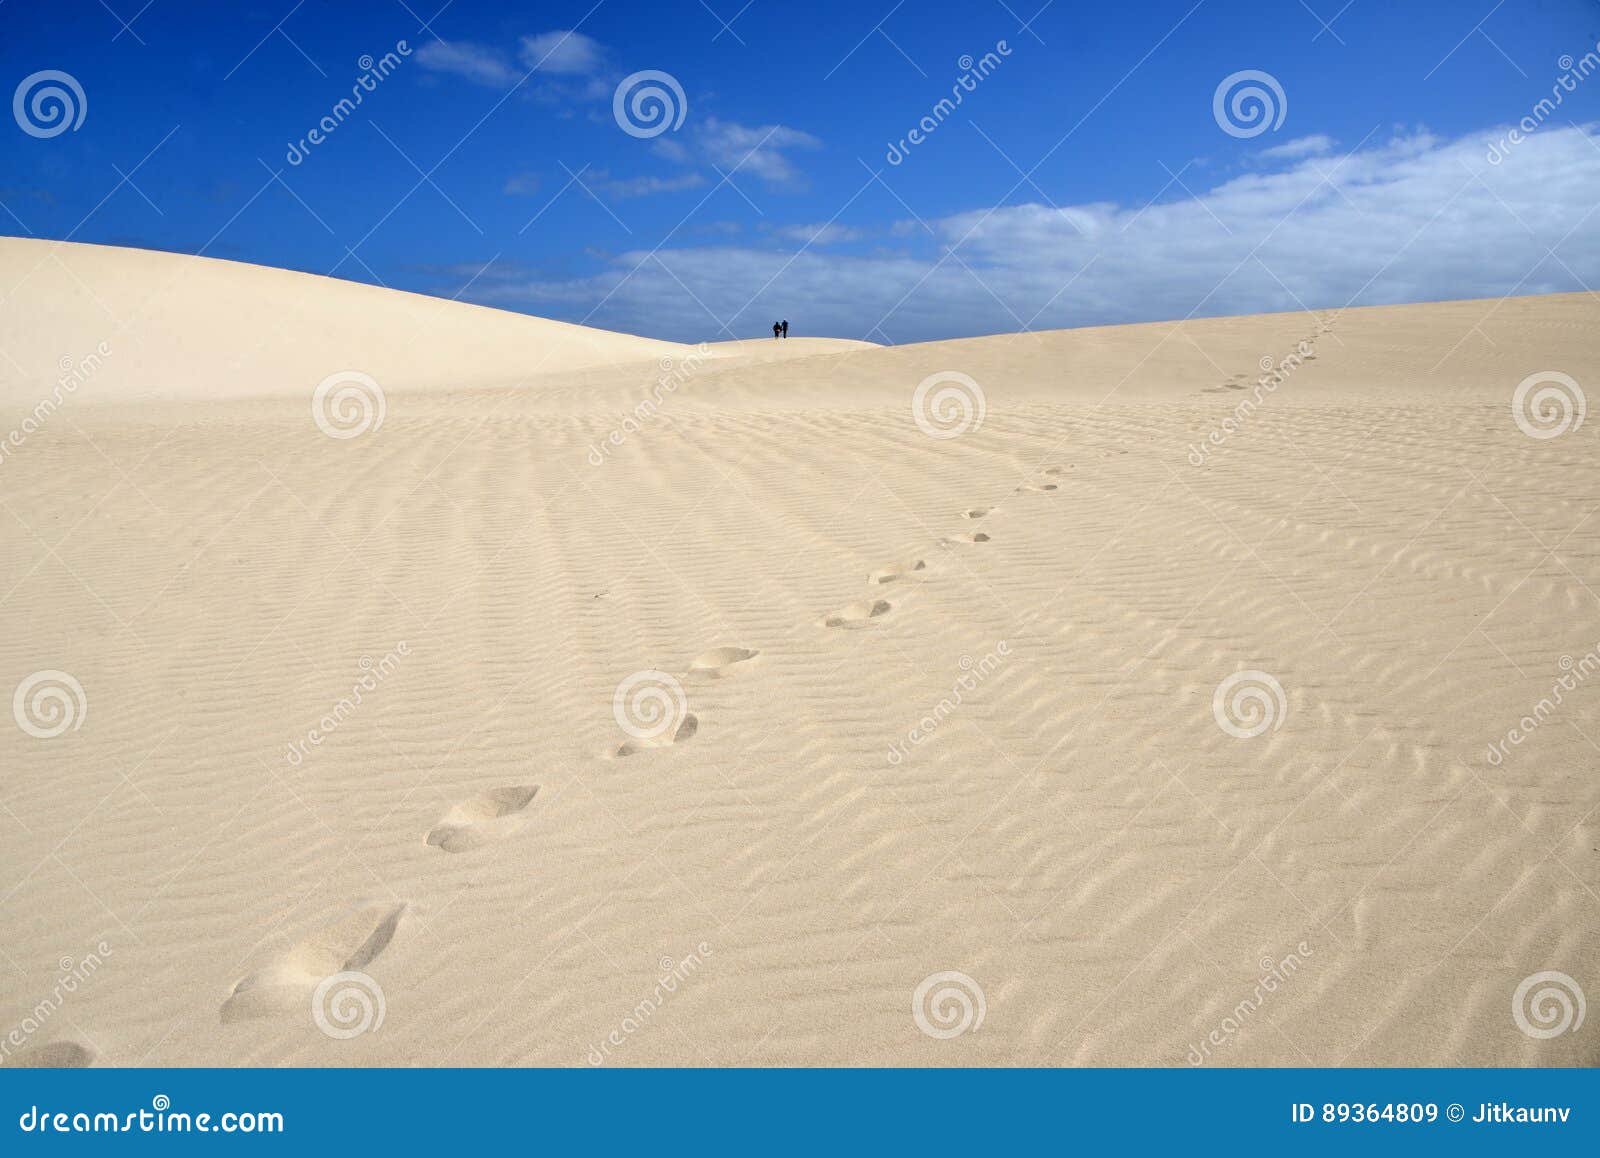 fuerteventura dunas